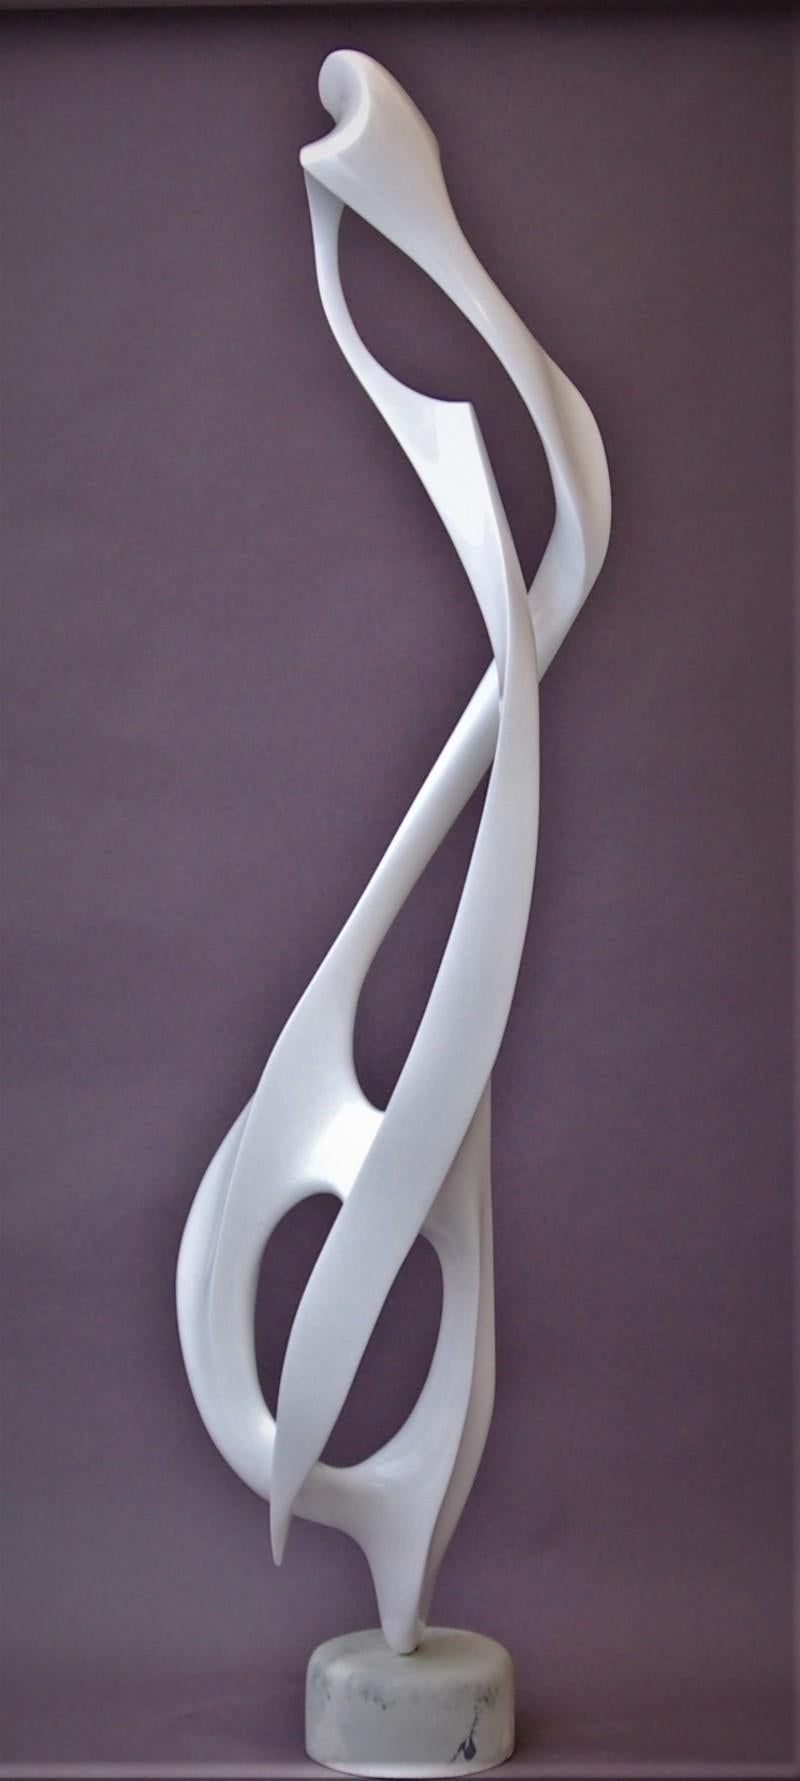 Fibre de verre / fibre de carbone imprégnée de résine polyester catalysée Laque acrylique chargée de graphite sur base de résine polyester chargée

"Don Frost, sculpteur, créateur d'œuvres totalement uniques, novatrices et originales, est l'un des